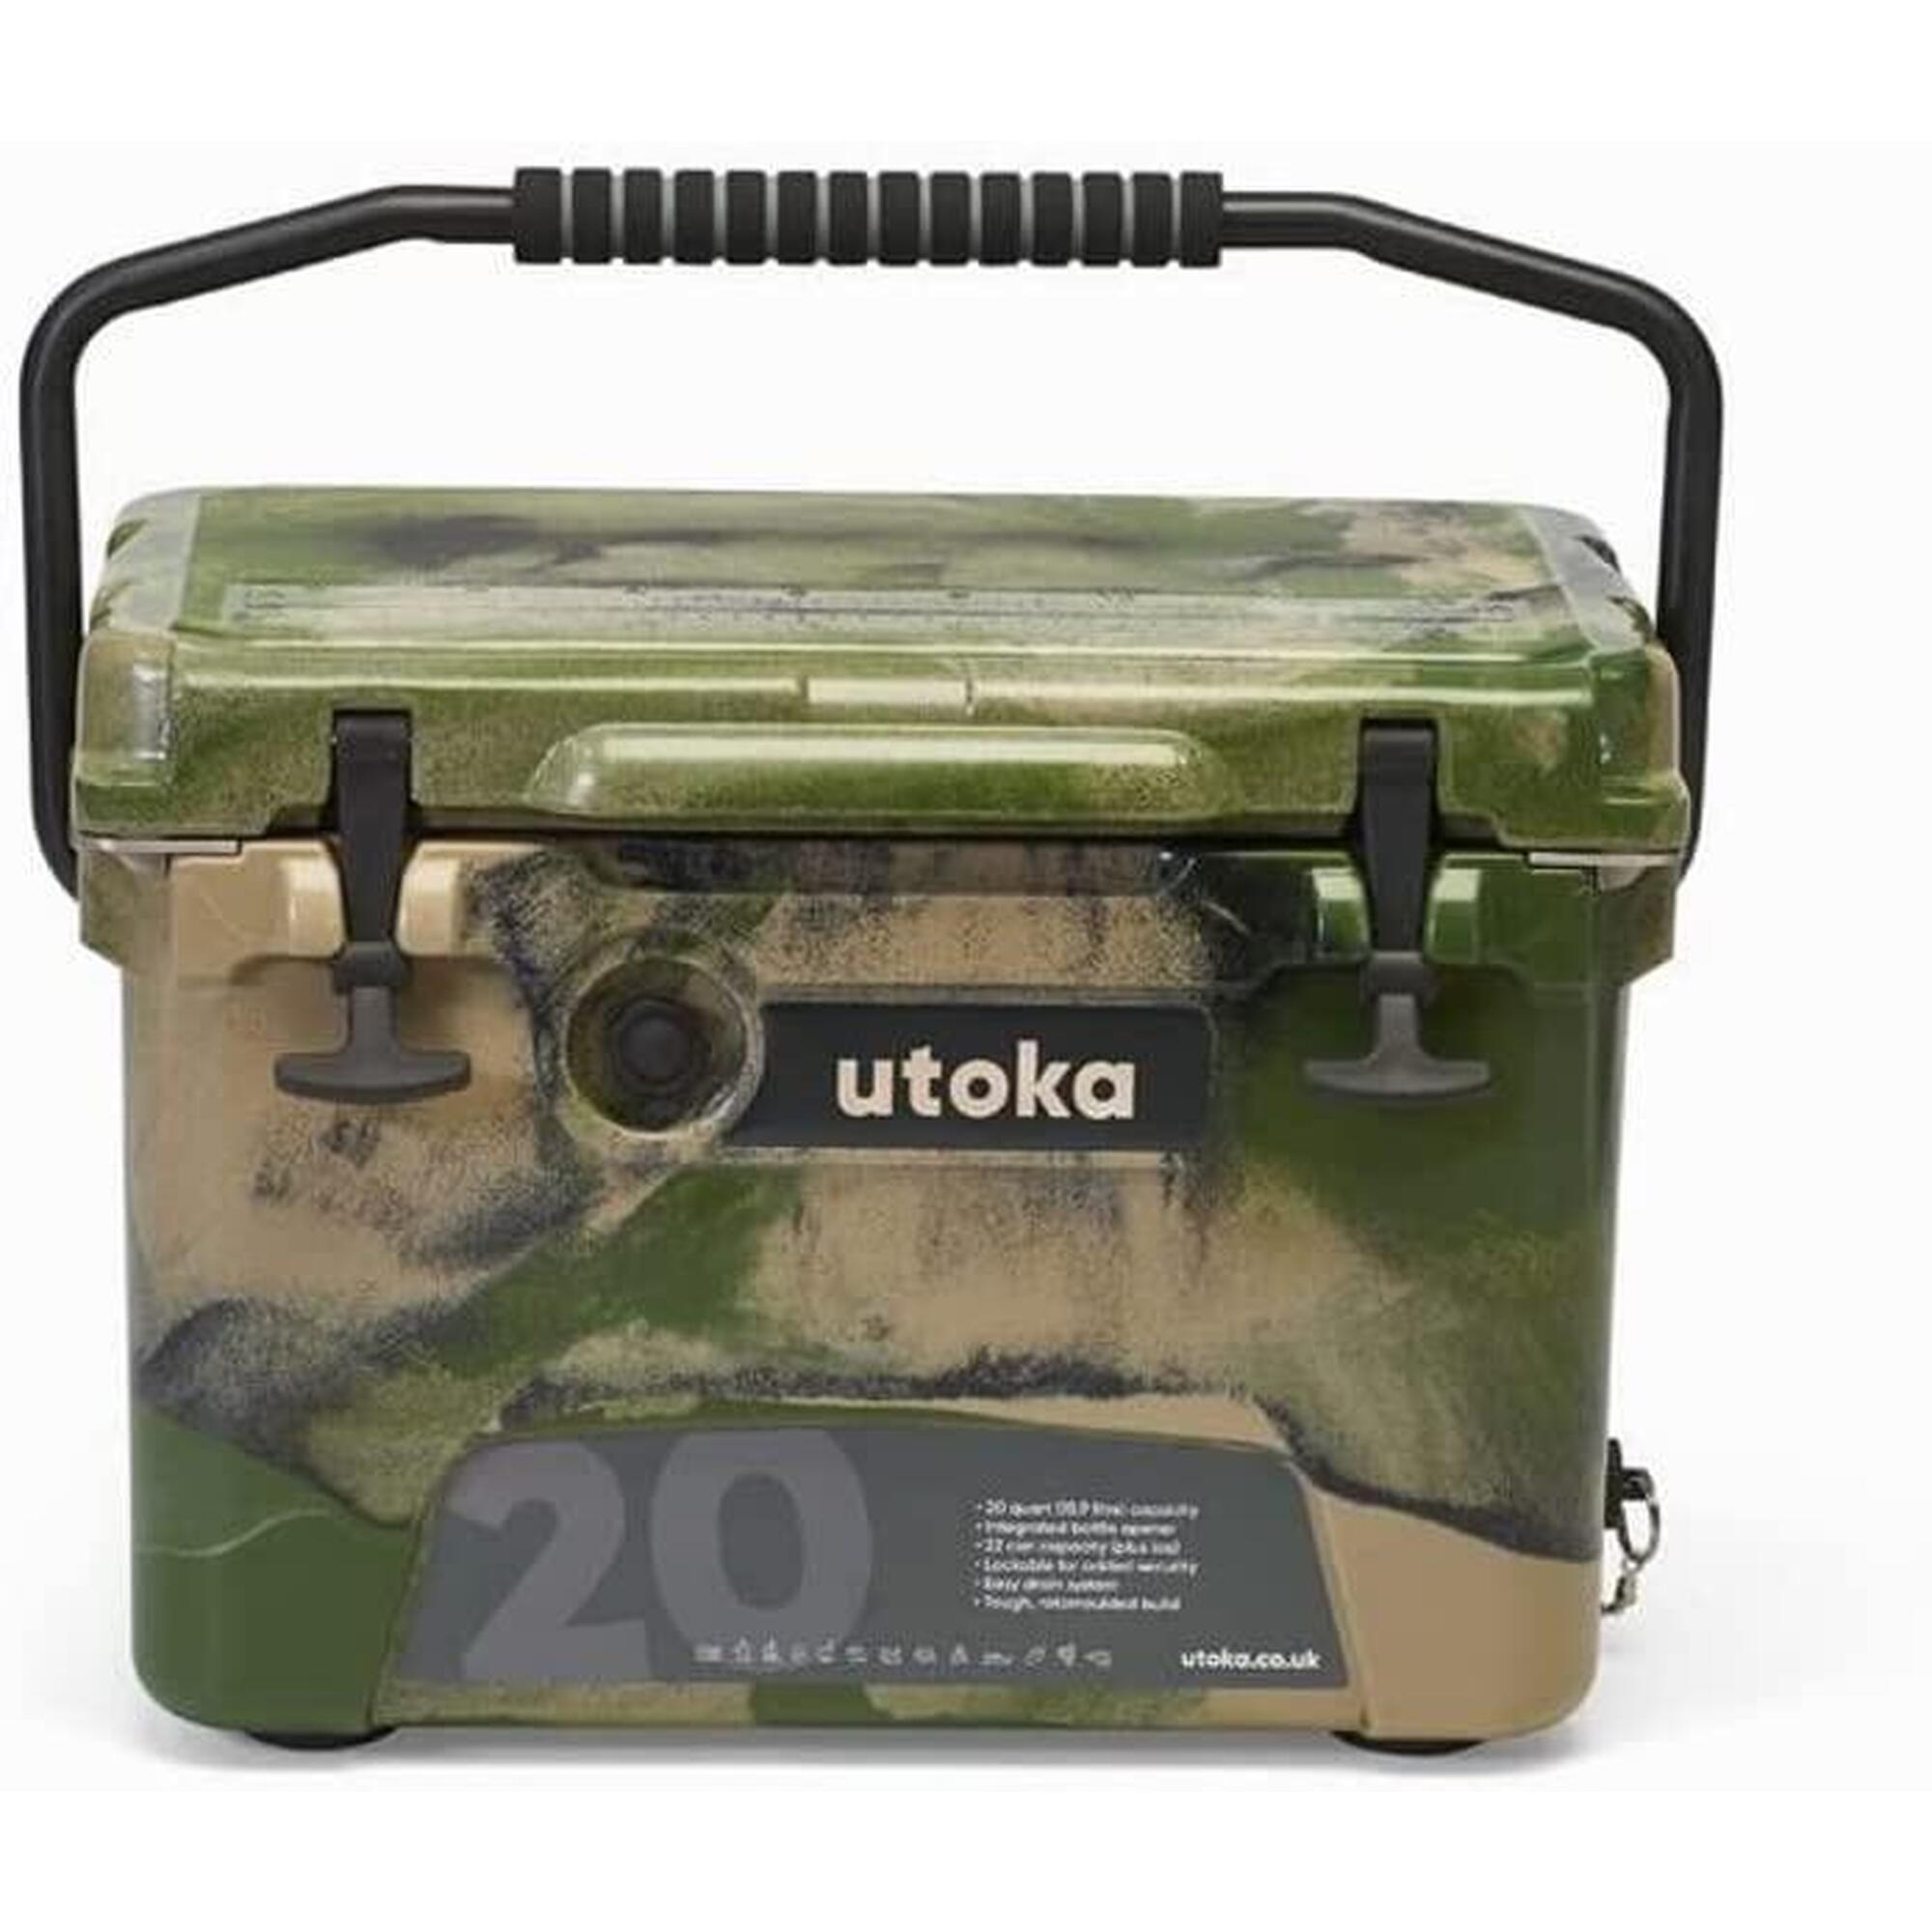 UTOKA Utoka 20 Cool Box, Portable Hard Cooler With Carry Handle - Camo